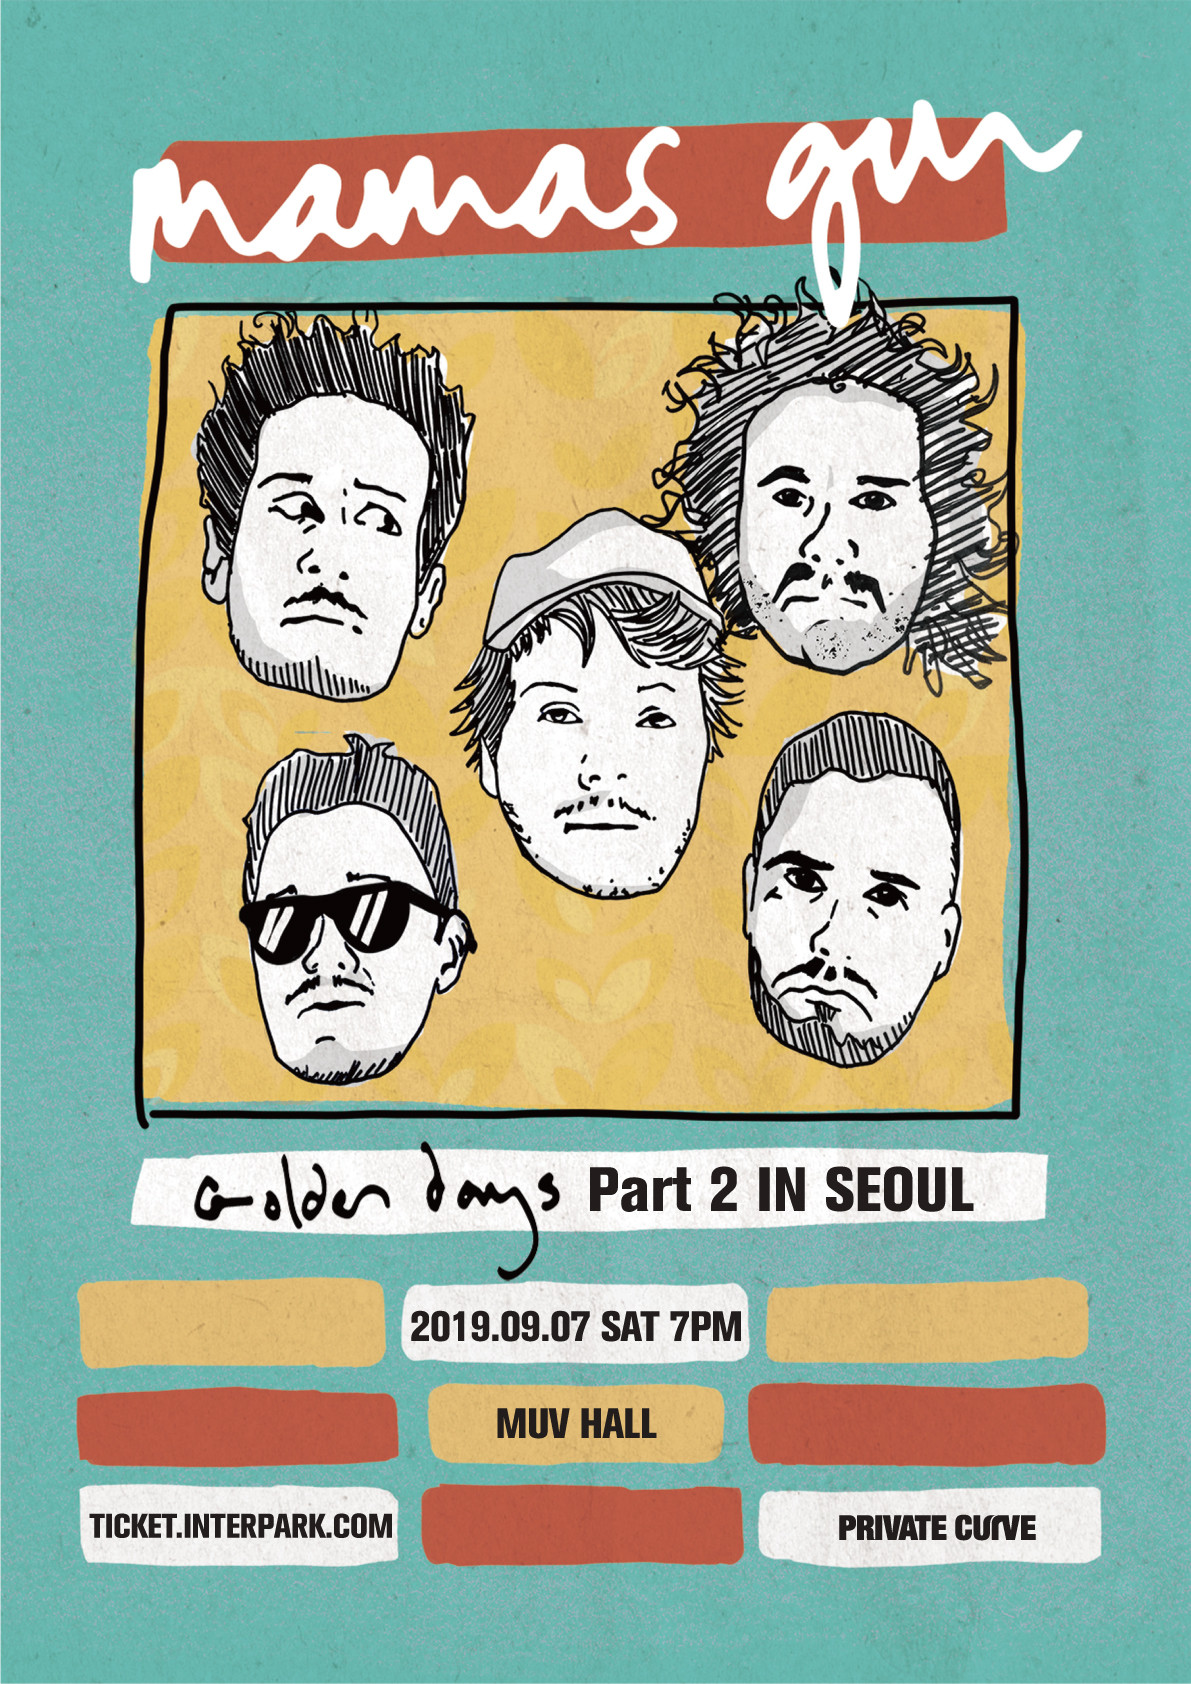 [공연안내] MAMAS GUN ''GOLDEN DAYS PART 2 IN SEOUL''